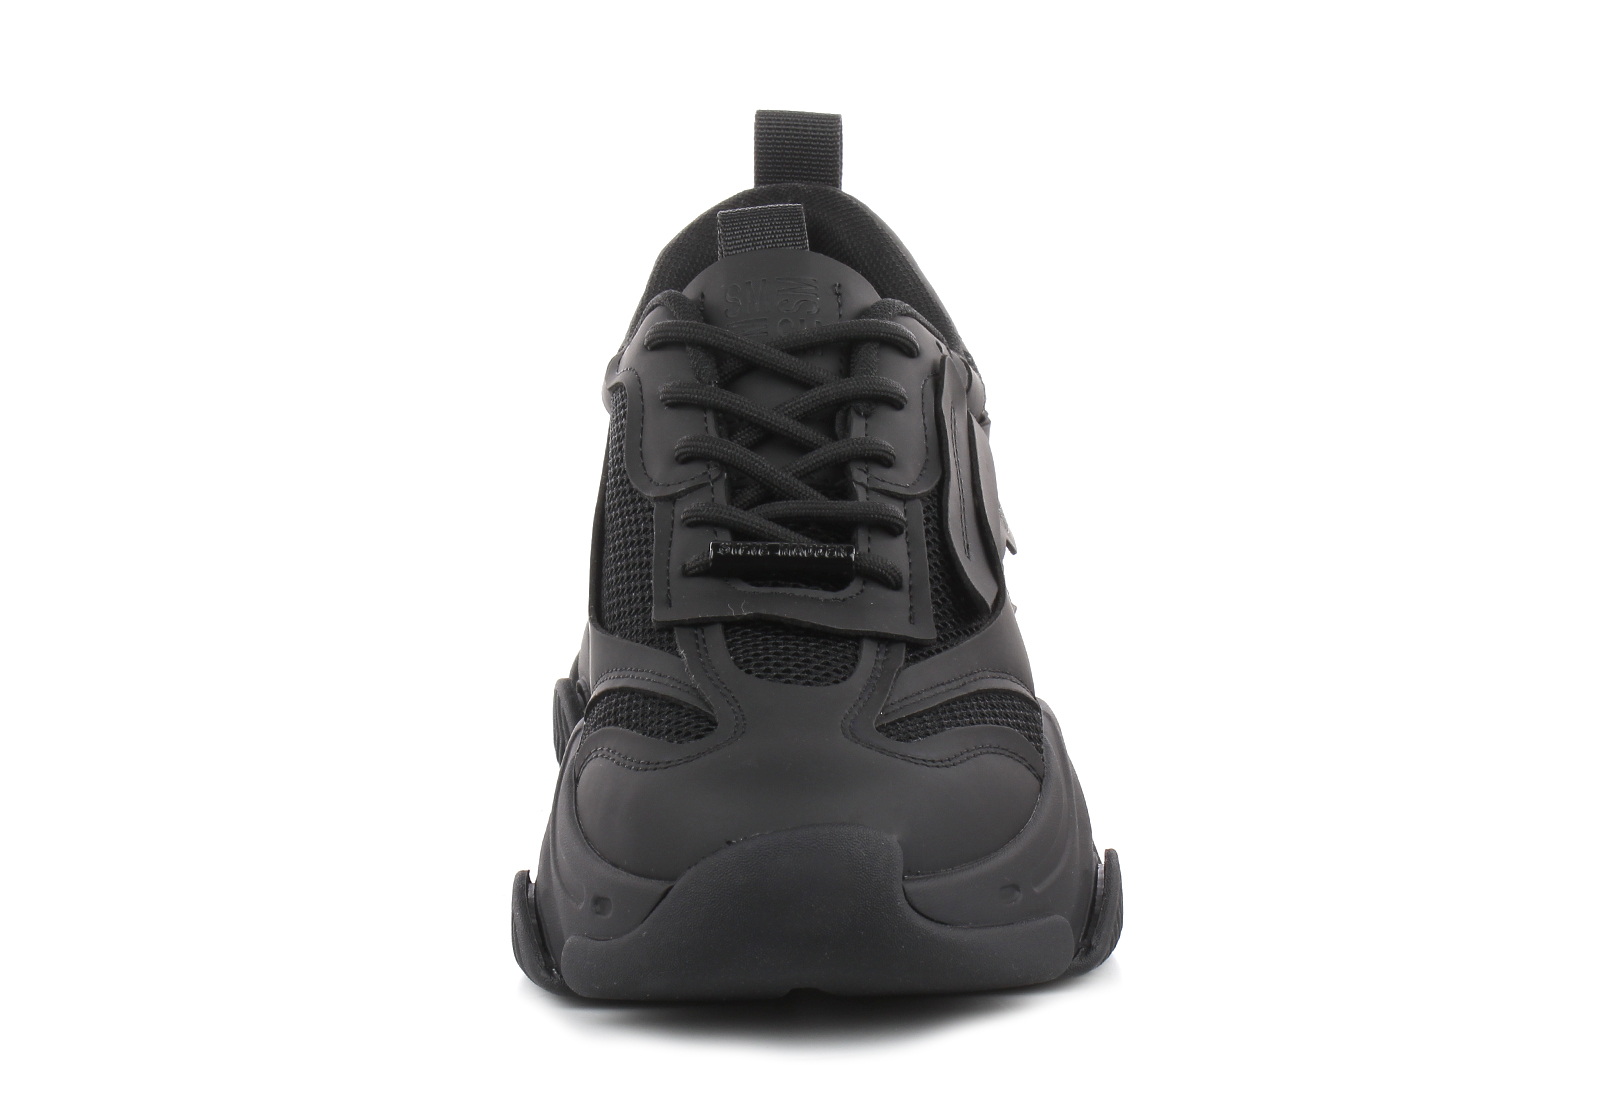 Steve Madden Sneakers - Possess - SM12000480-001 - Online shop for ...